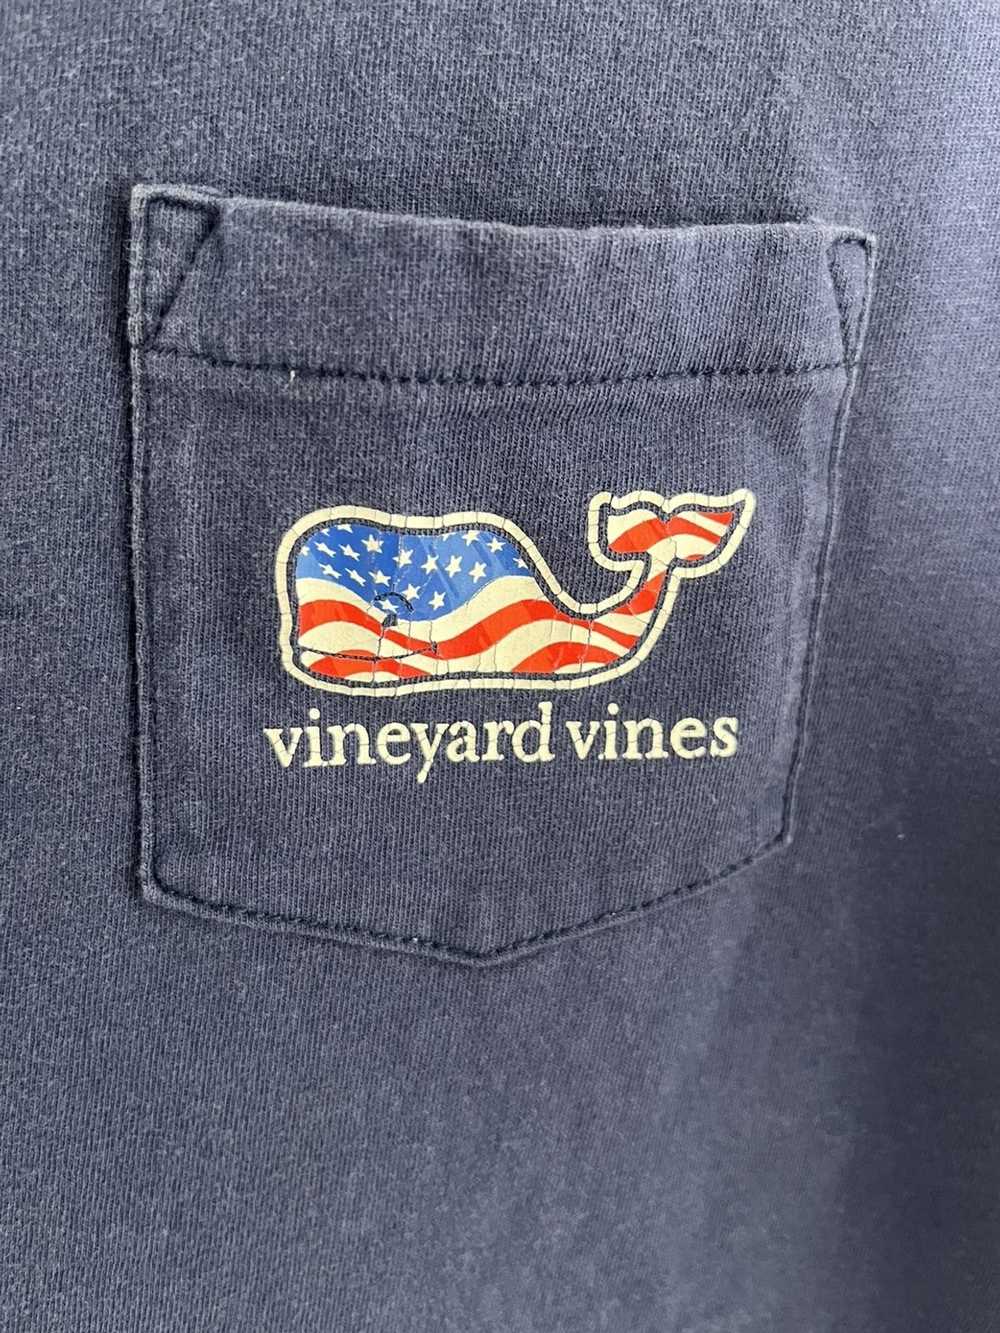 Vineyard Vines Vinyard Vines American Flag Logo T… - image 2